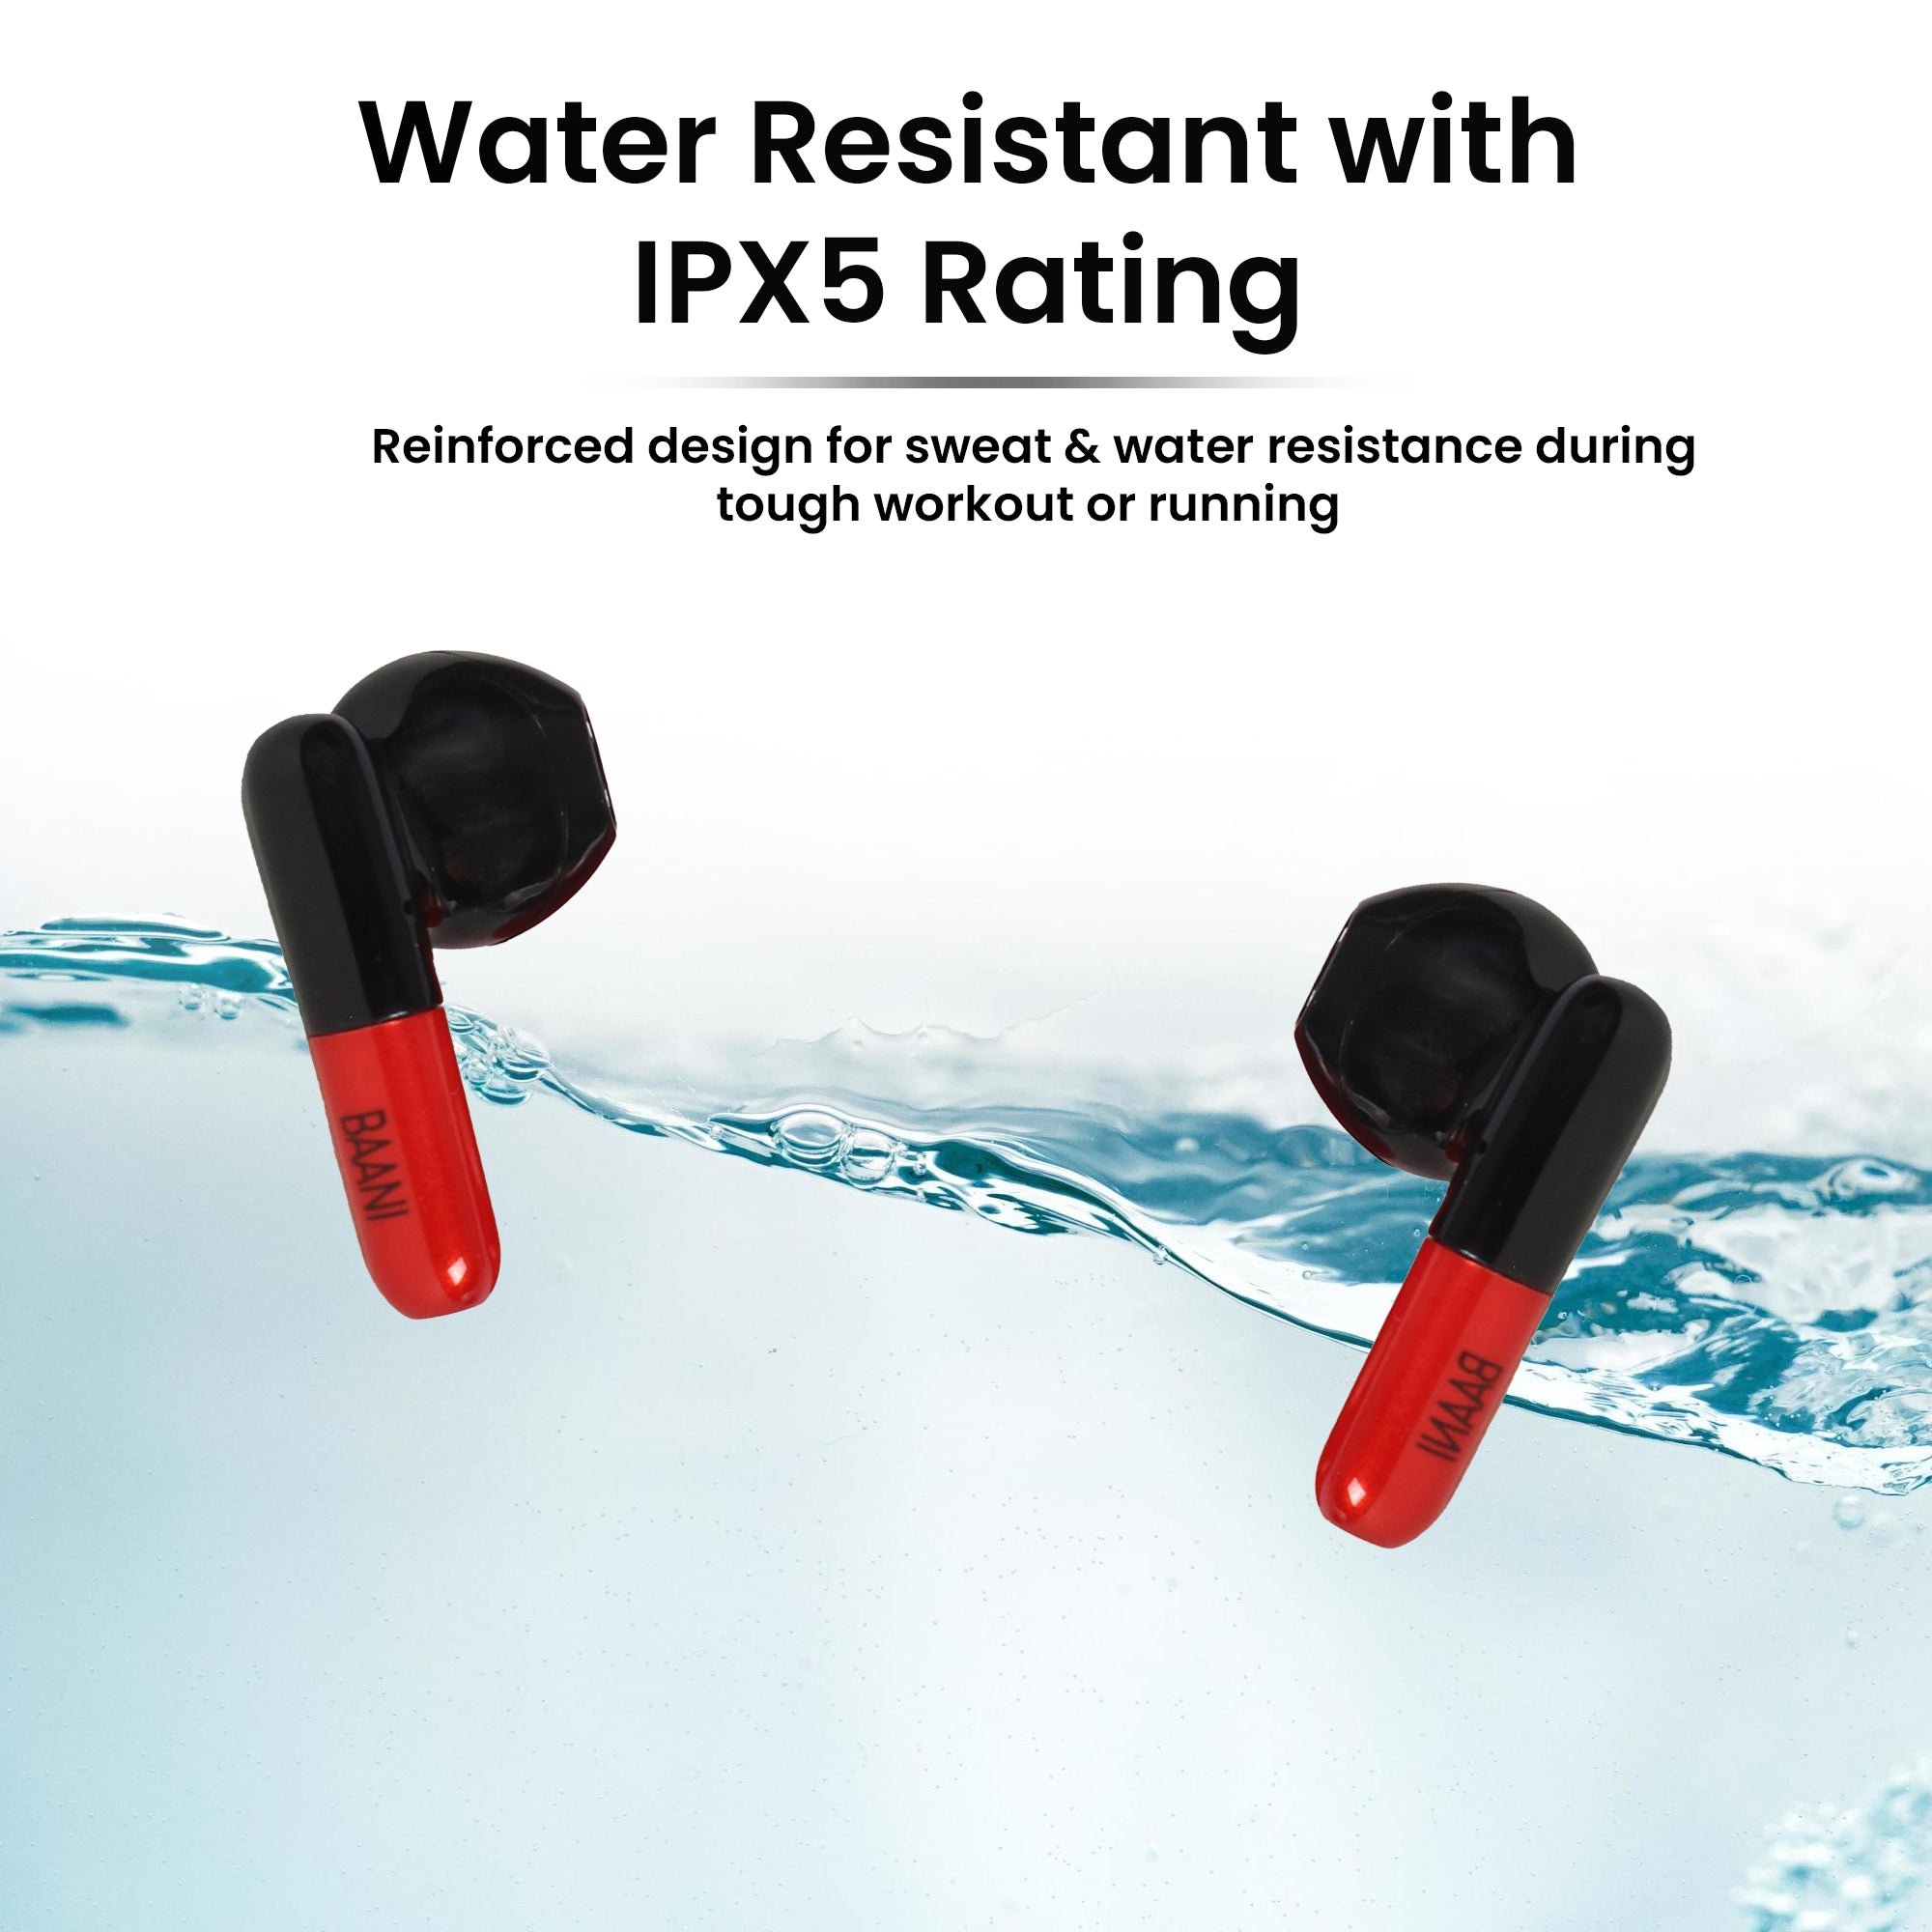 Red earbuds in water highlighting water-resistant properties